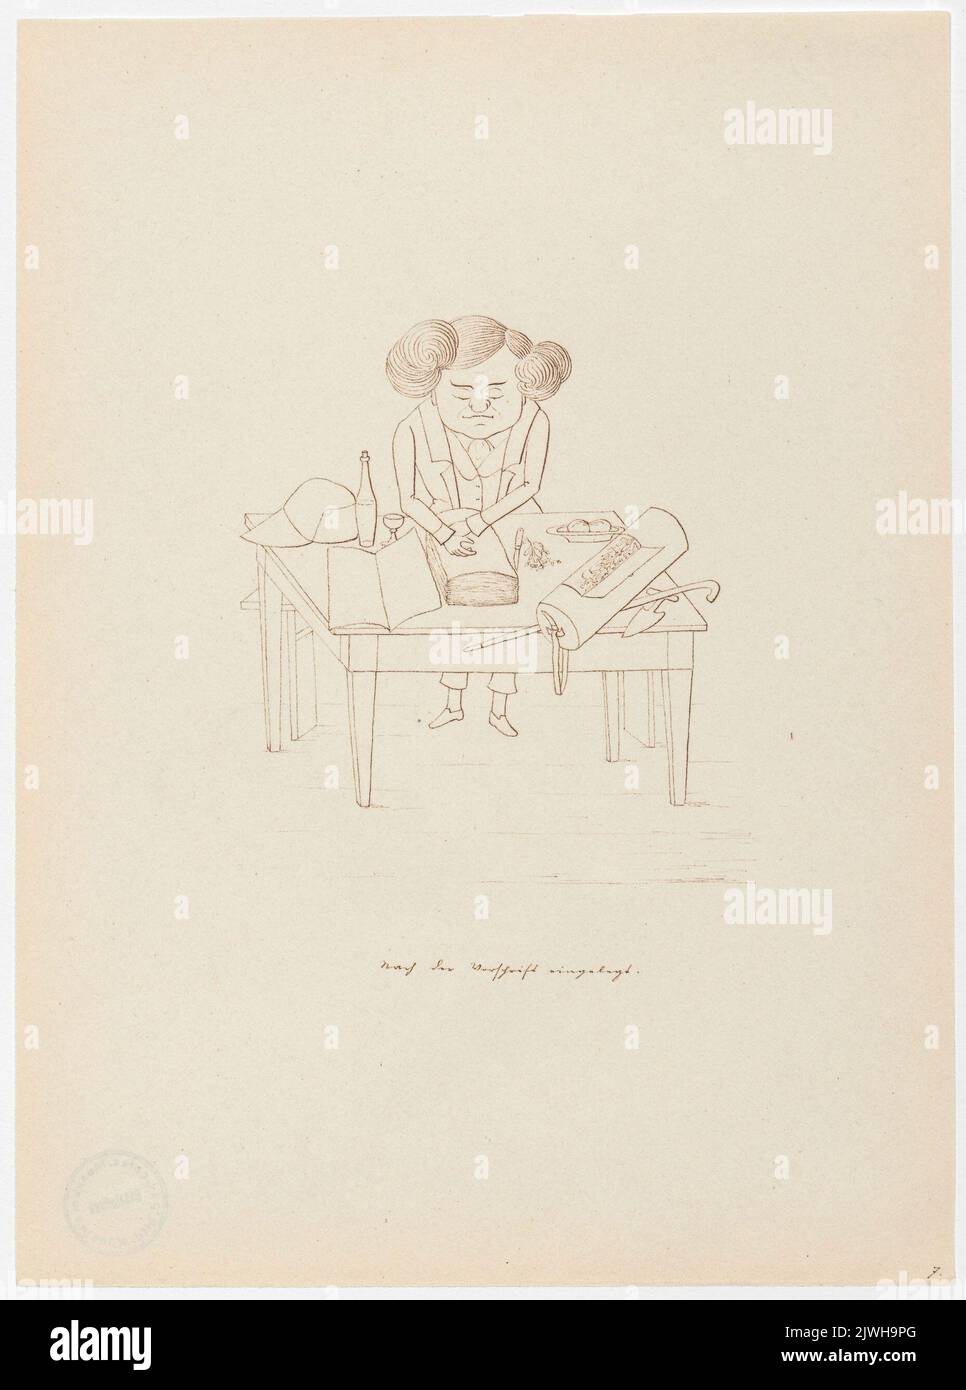 'Nach der vorschrift eingelegt'. Winkler, Karl Gustav Adolf (1810-1893), draughtsman, cartoonist Stock Photo